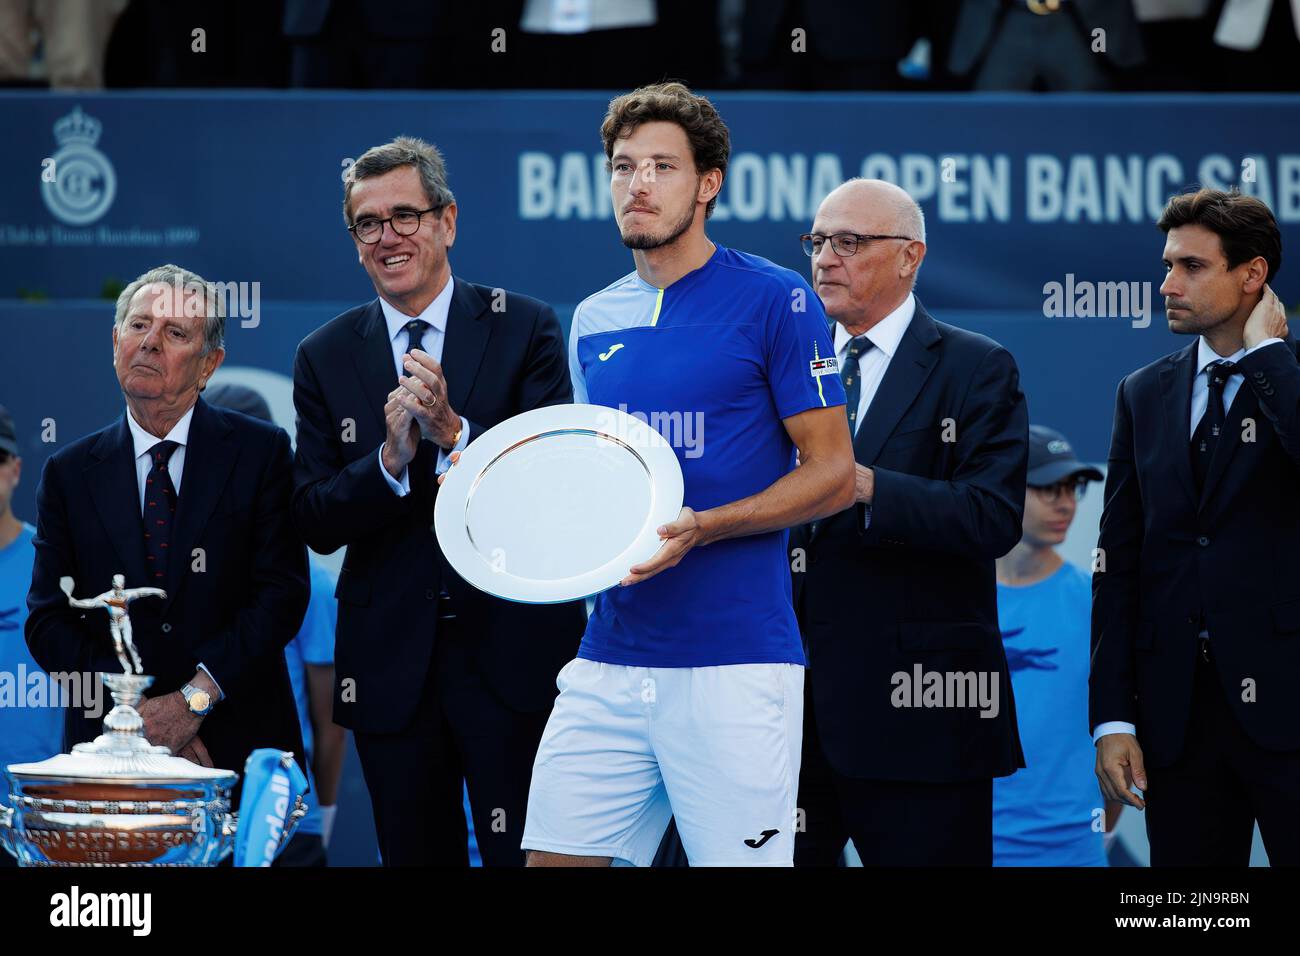 BARCELLONA - Apr 24: Pablo Carreno ha ricevuto il trofeo a 2nd posti al Torneo finale di tennis Barcelona Open Banc Sabadell al Real Club De Tenis Barc Foto Stock